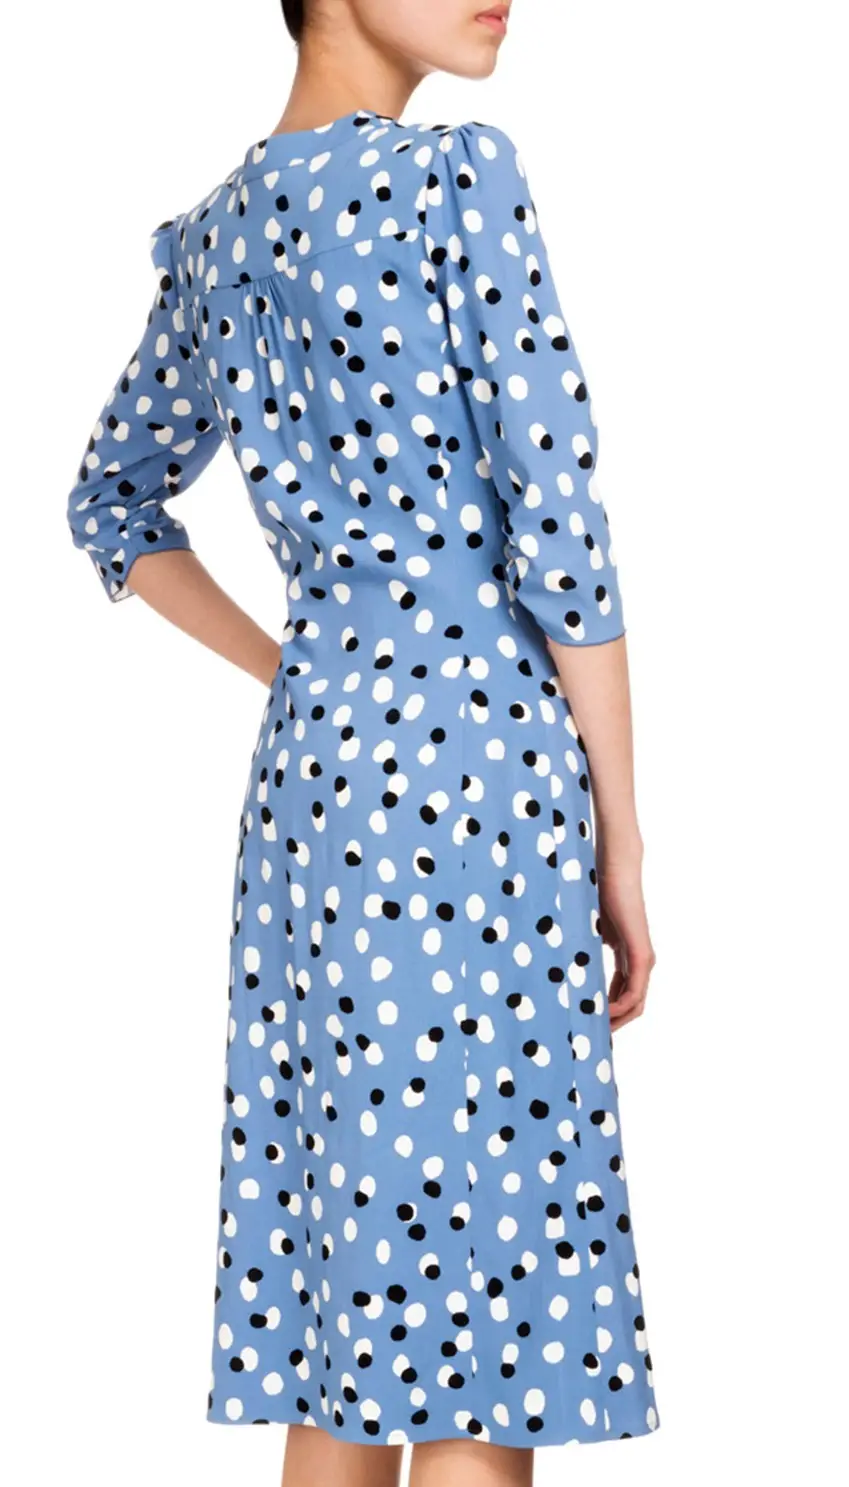 Altuzarra Aimee Polka-Dot Button-Front Dress